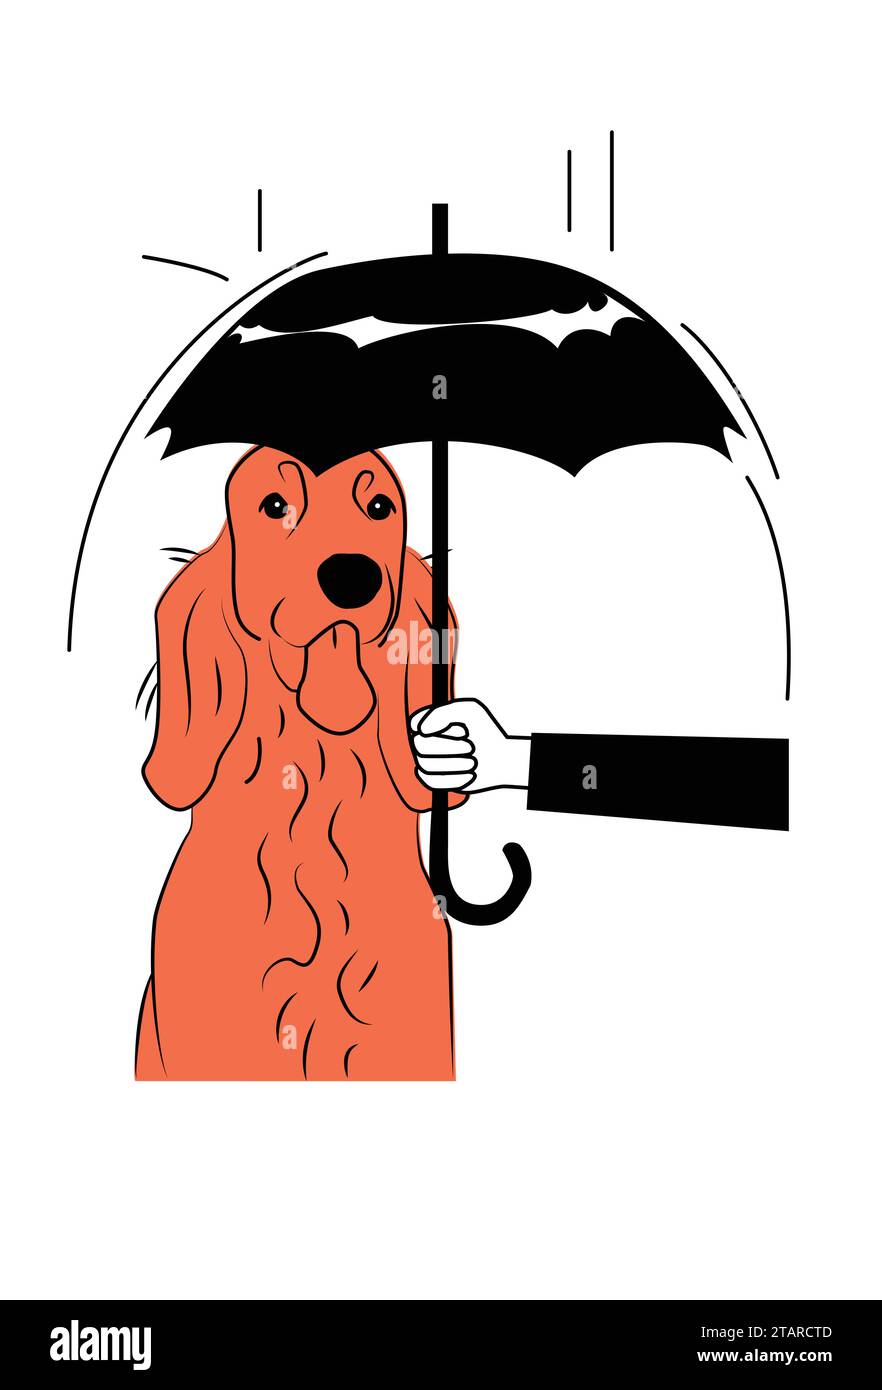 Pflege Eines streunenden irischen Setter Dog, indem er mit einem Regenschirm vor Regen schützt, ein heimatloses Tier adoptiert und unterstützt Stock Vektor